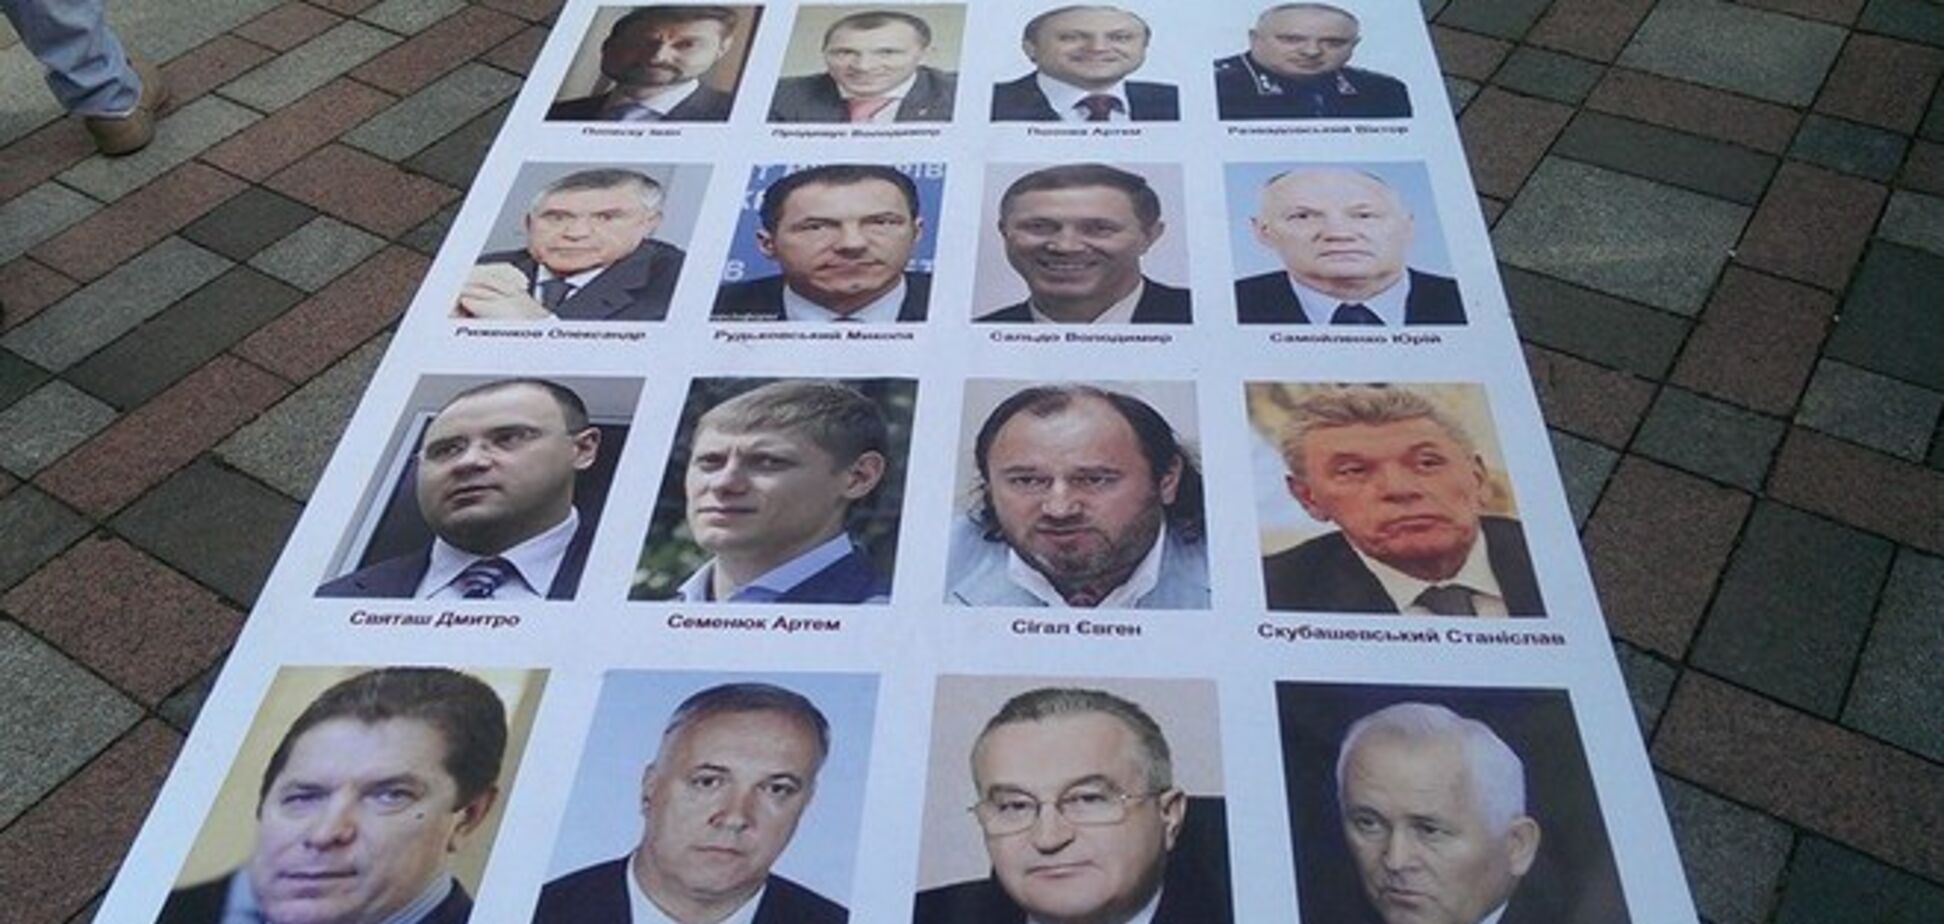 Активисты устроили депутатам Верховной Рады 'коридор позора'